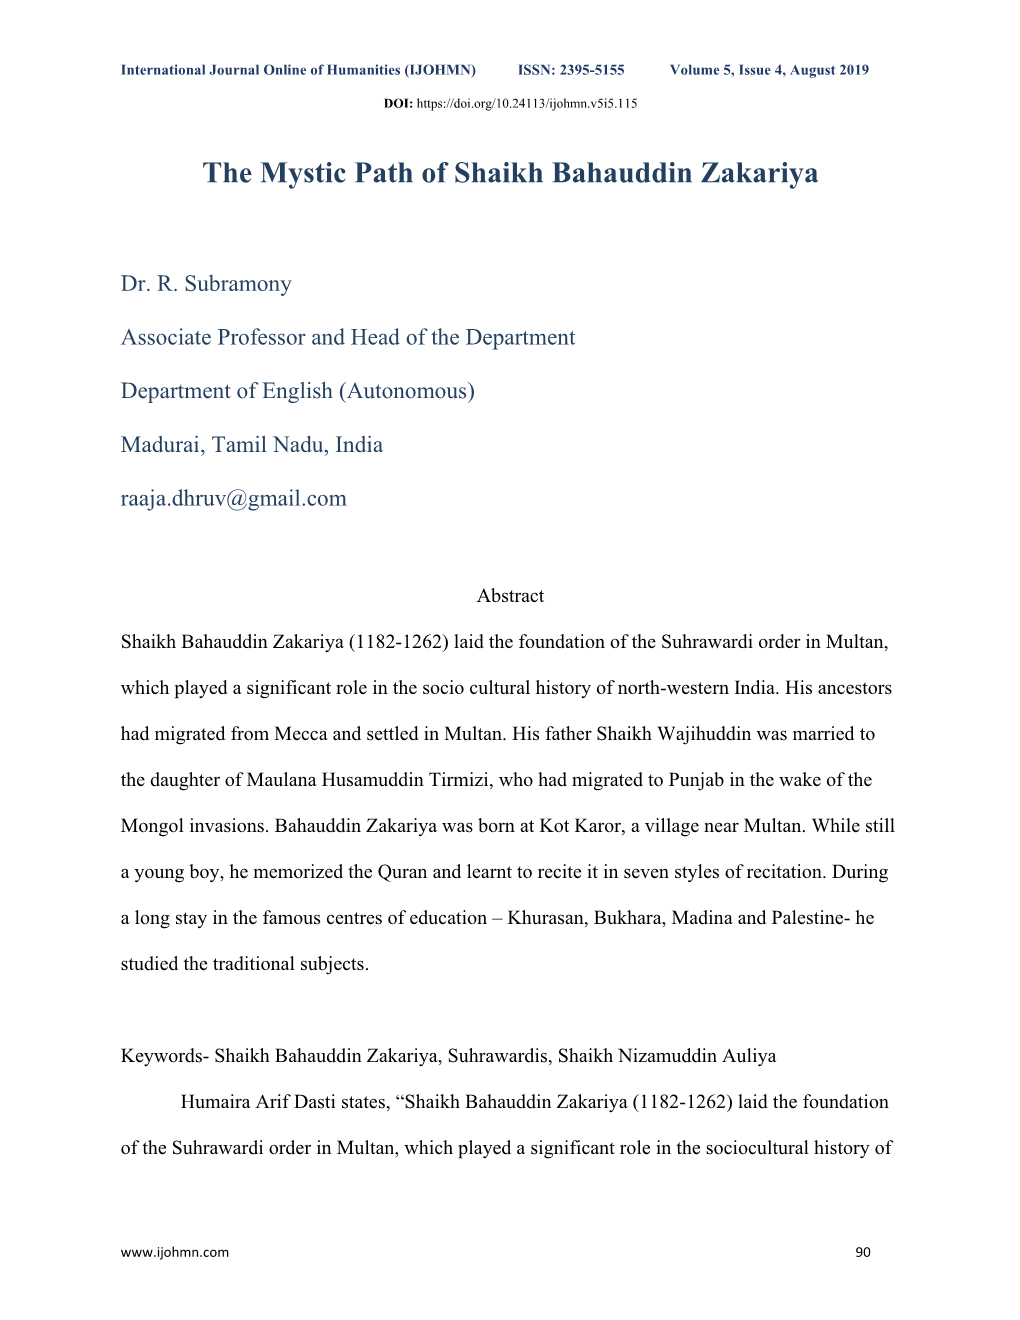 The Mystic Path of Shaikh Bahauddin Zakariya